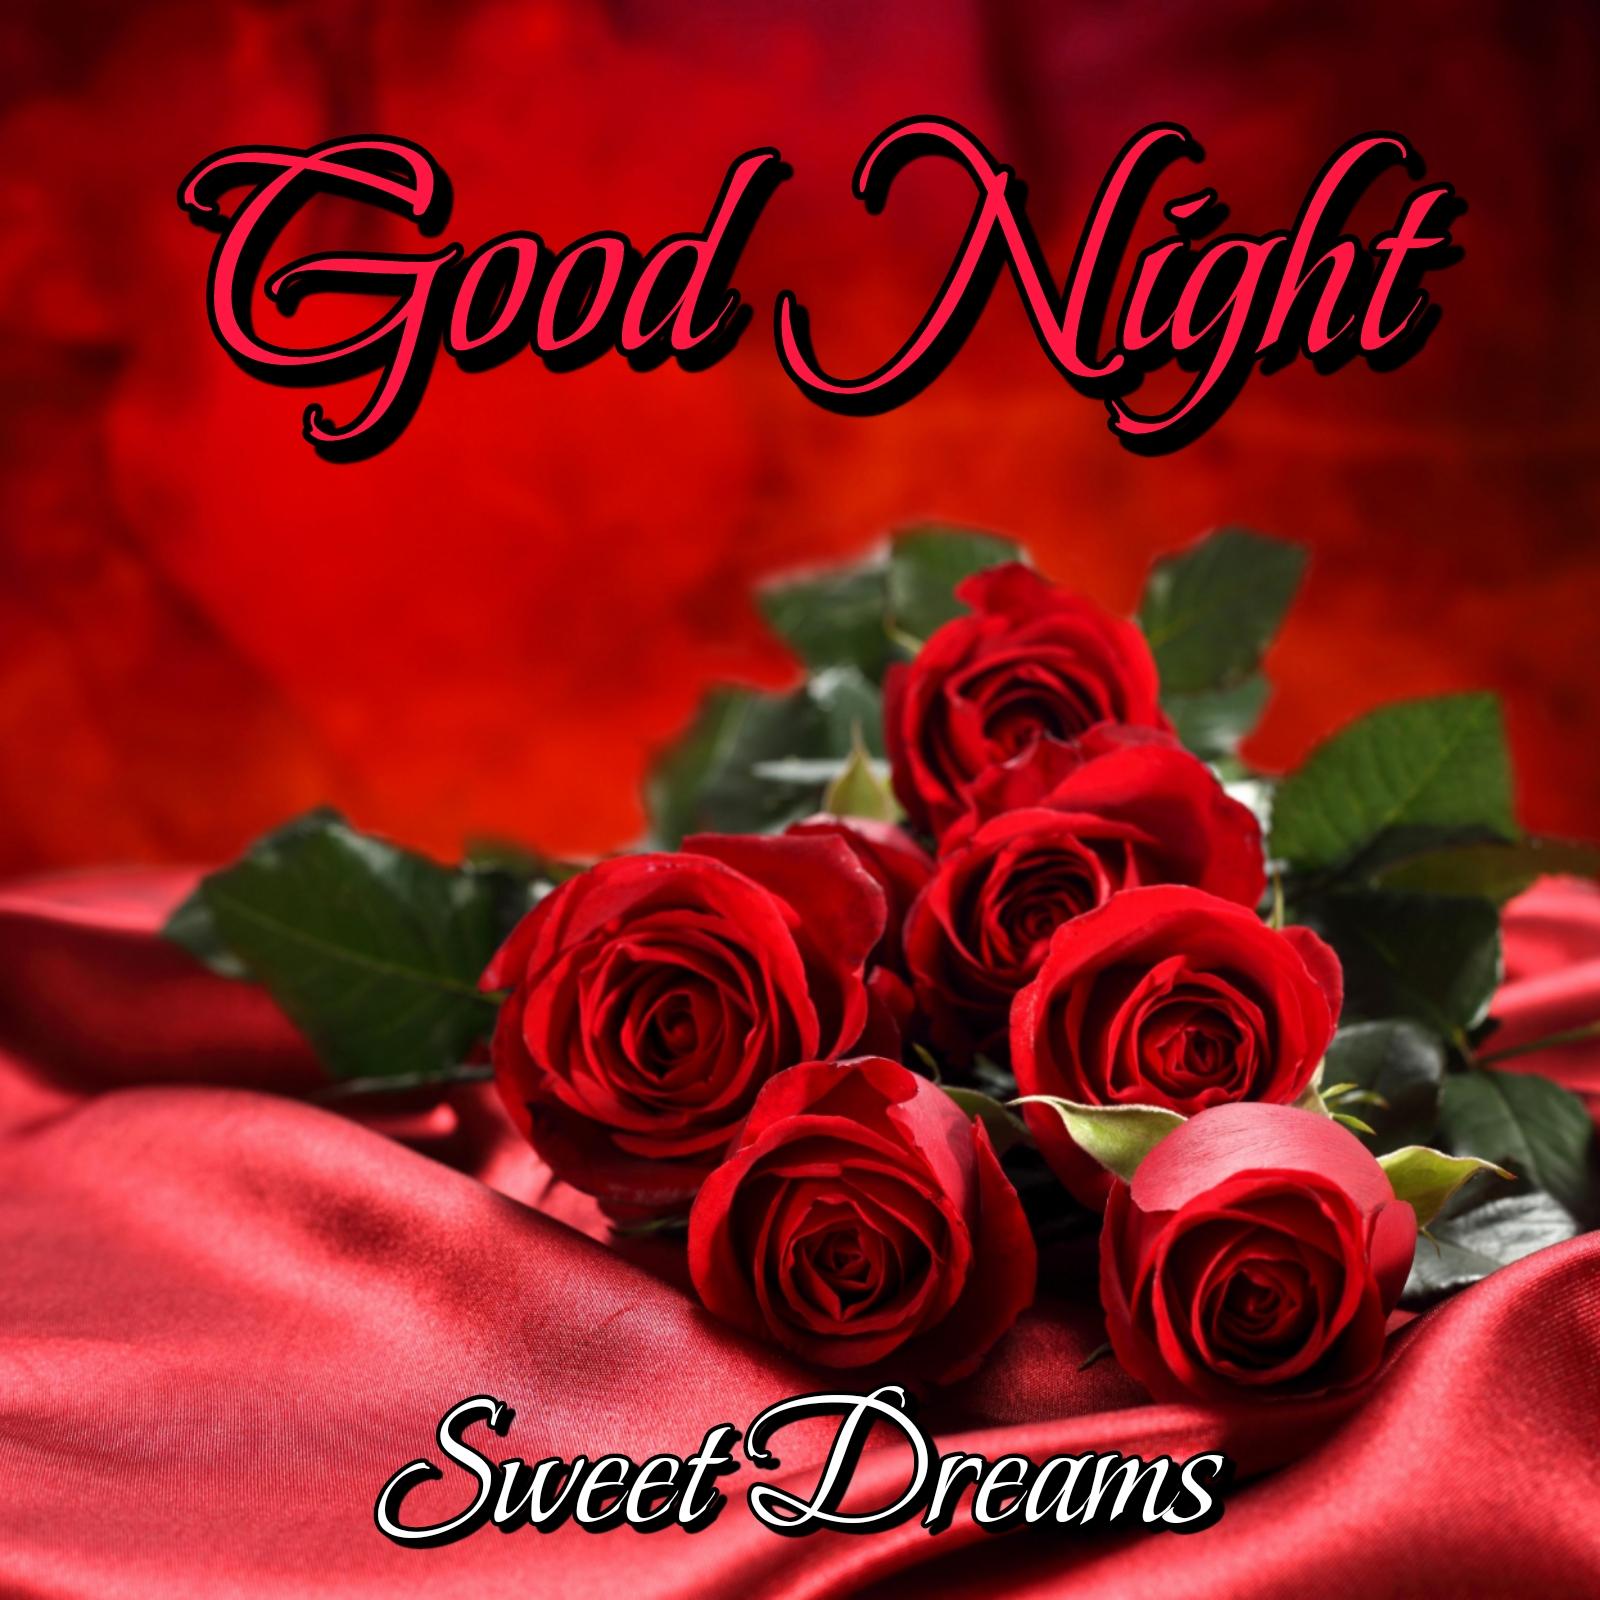 Good Night Red Rose Images - ShayariMaza